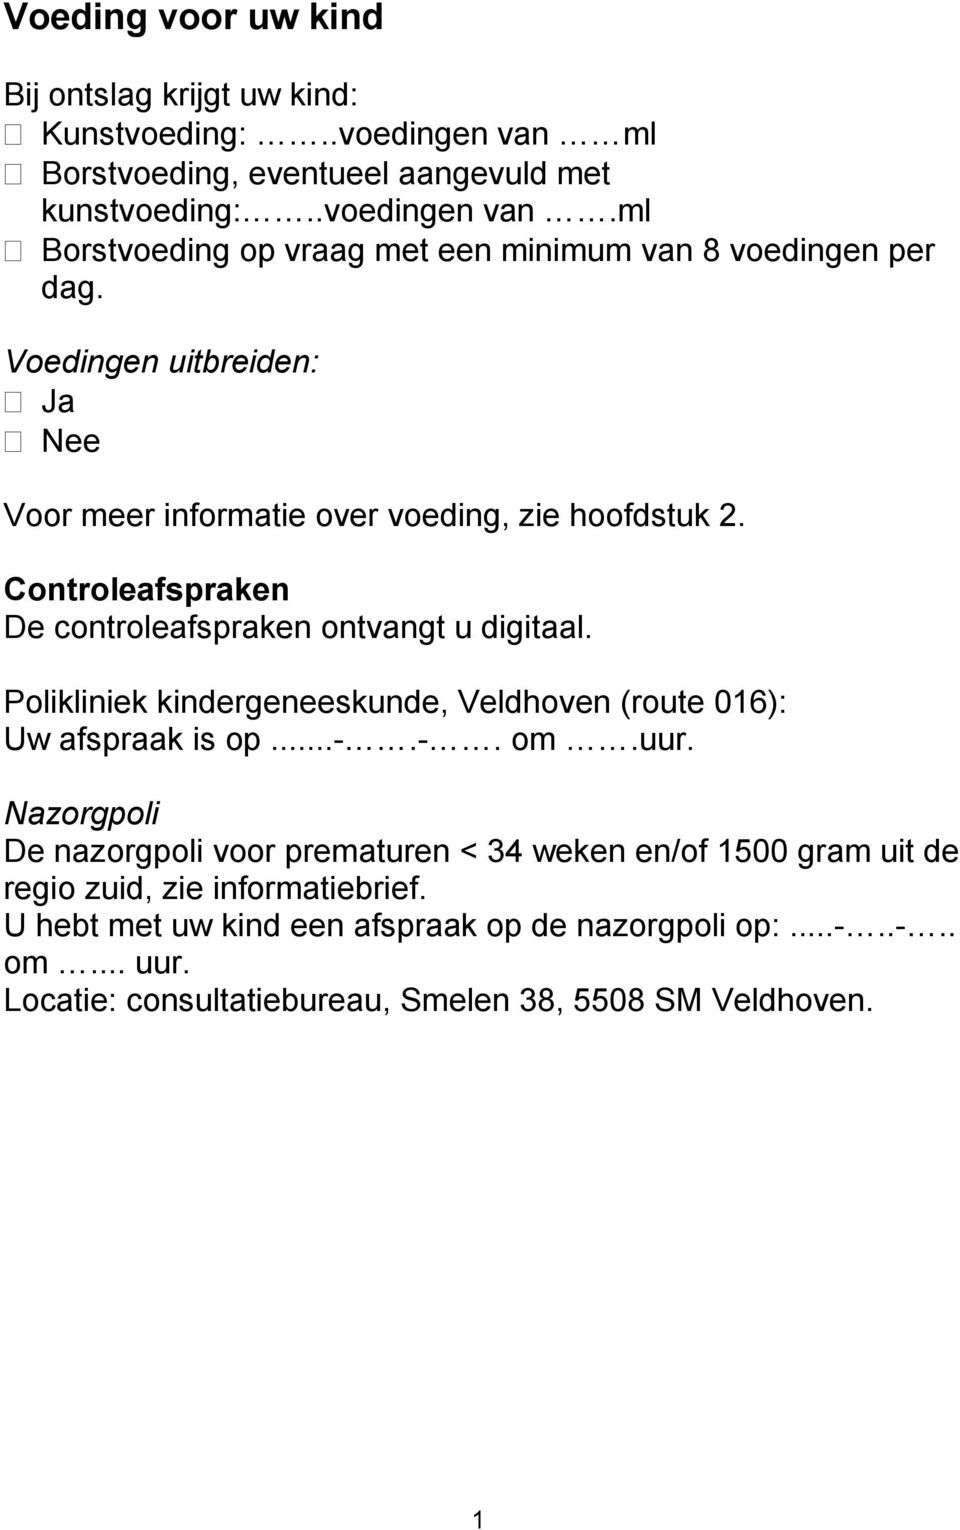 Polikliniek kindergeneeskunde, Veldhoven (route 016): Uw afspraak is op...-.-. om.uur.